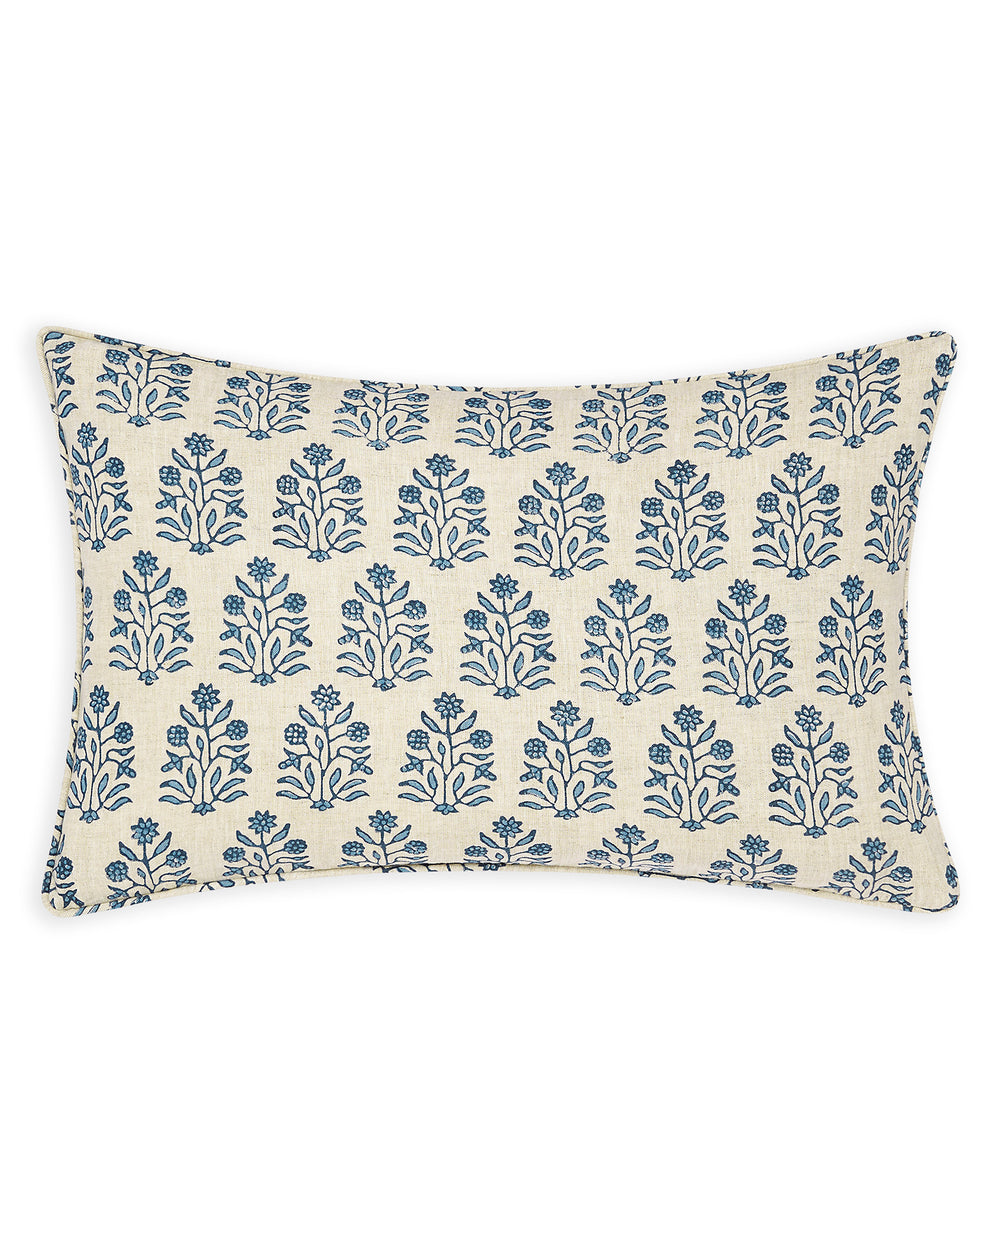 Amer Azure linen cushion